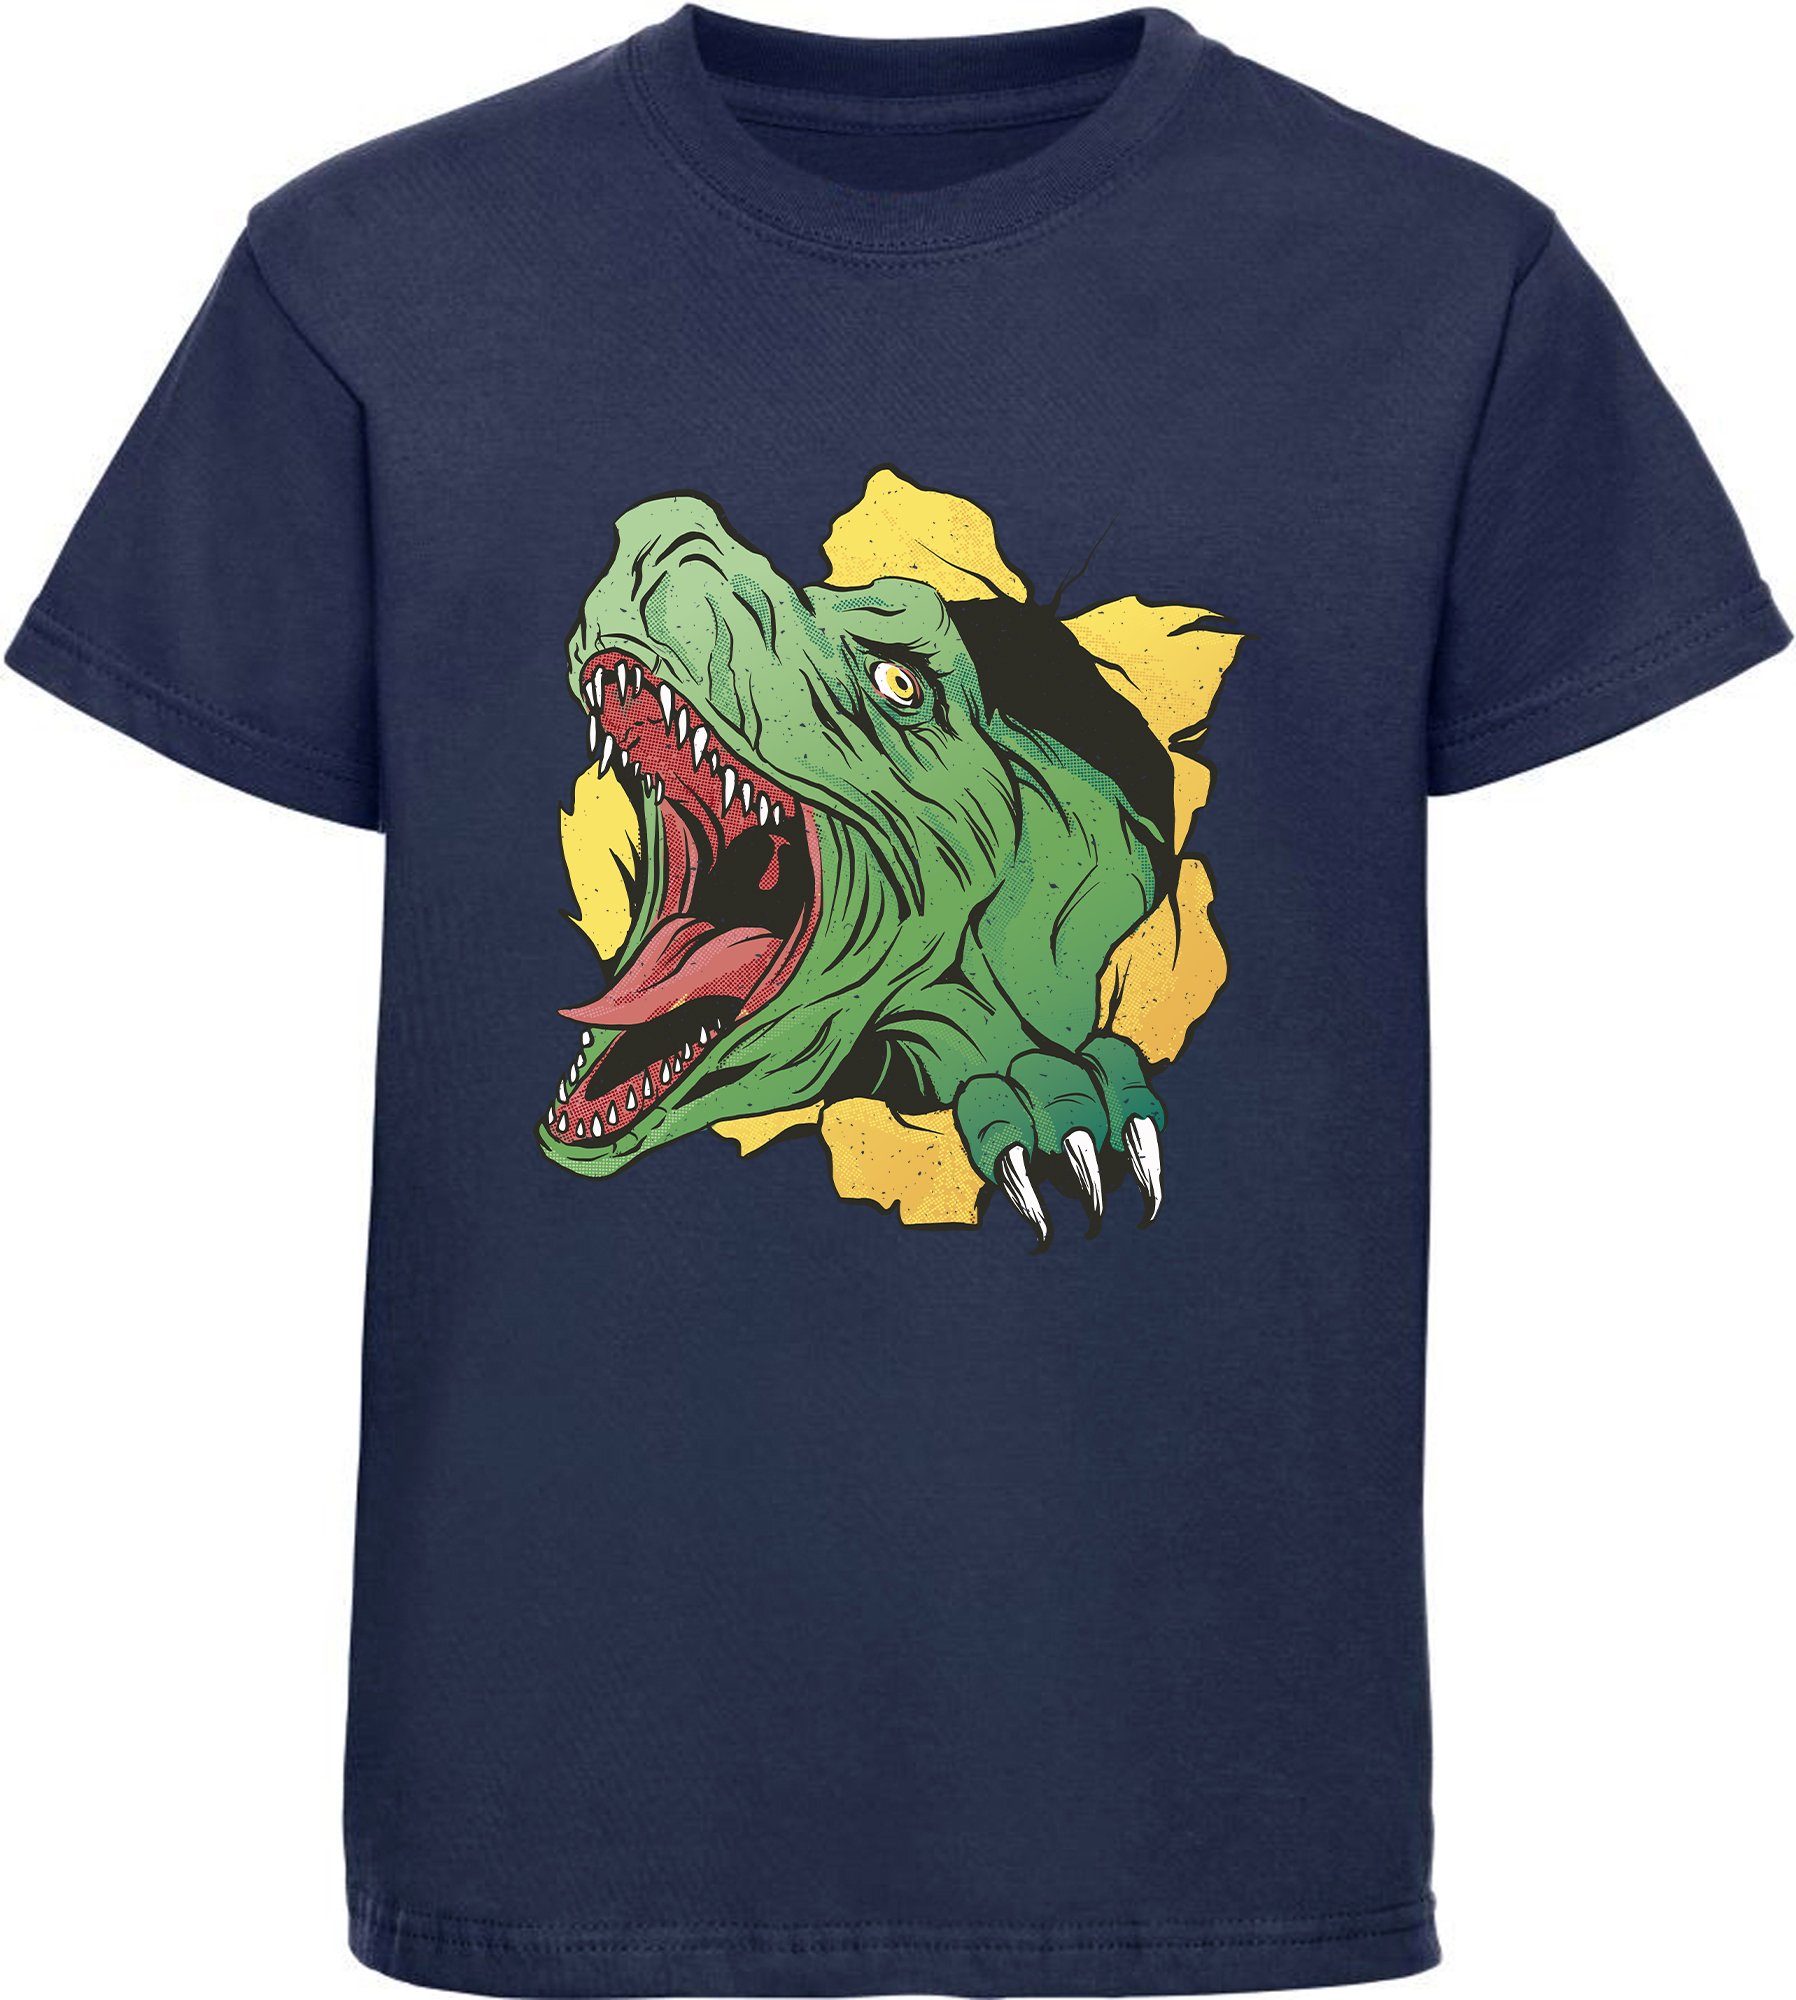 MyDesign24 Print-Shirt bedrucktes Kinder T-Shirt mit T-Rex Kopf Baumwollshirt mit Dino, schwarz, weiß, rot, blau, i68 navy blau